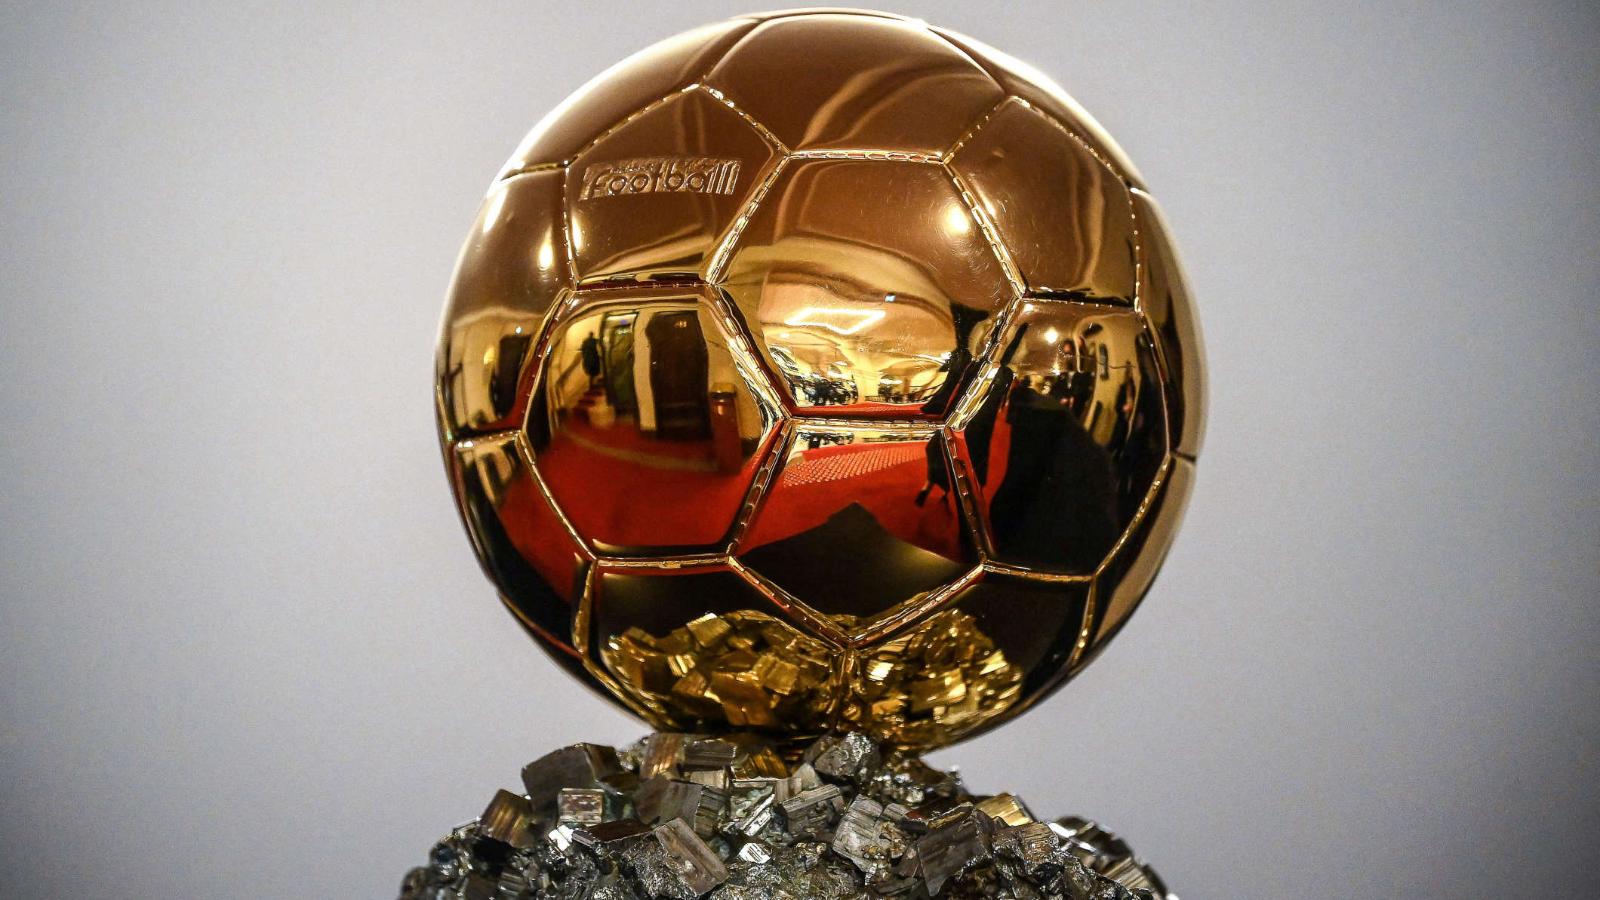 Quiénes son todos los ganadores del Balón de Oro en la historia?